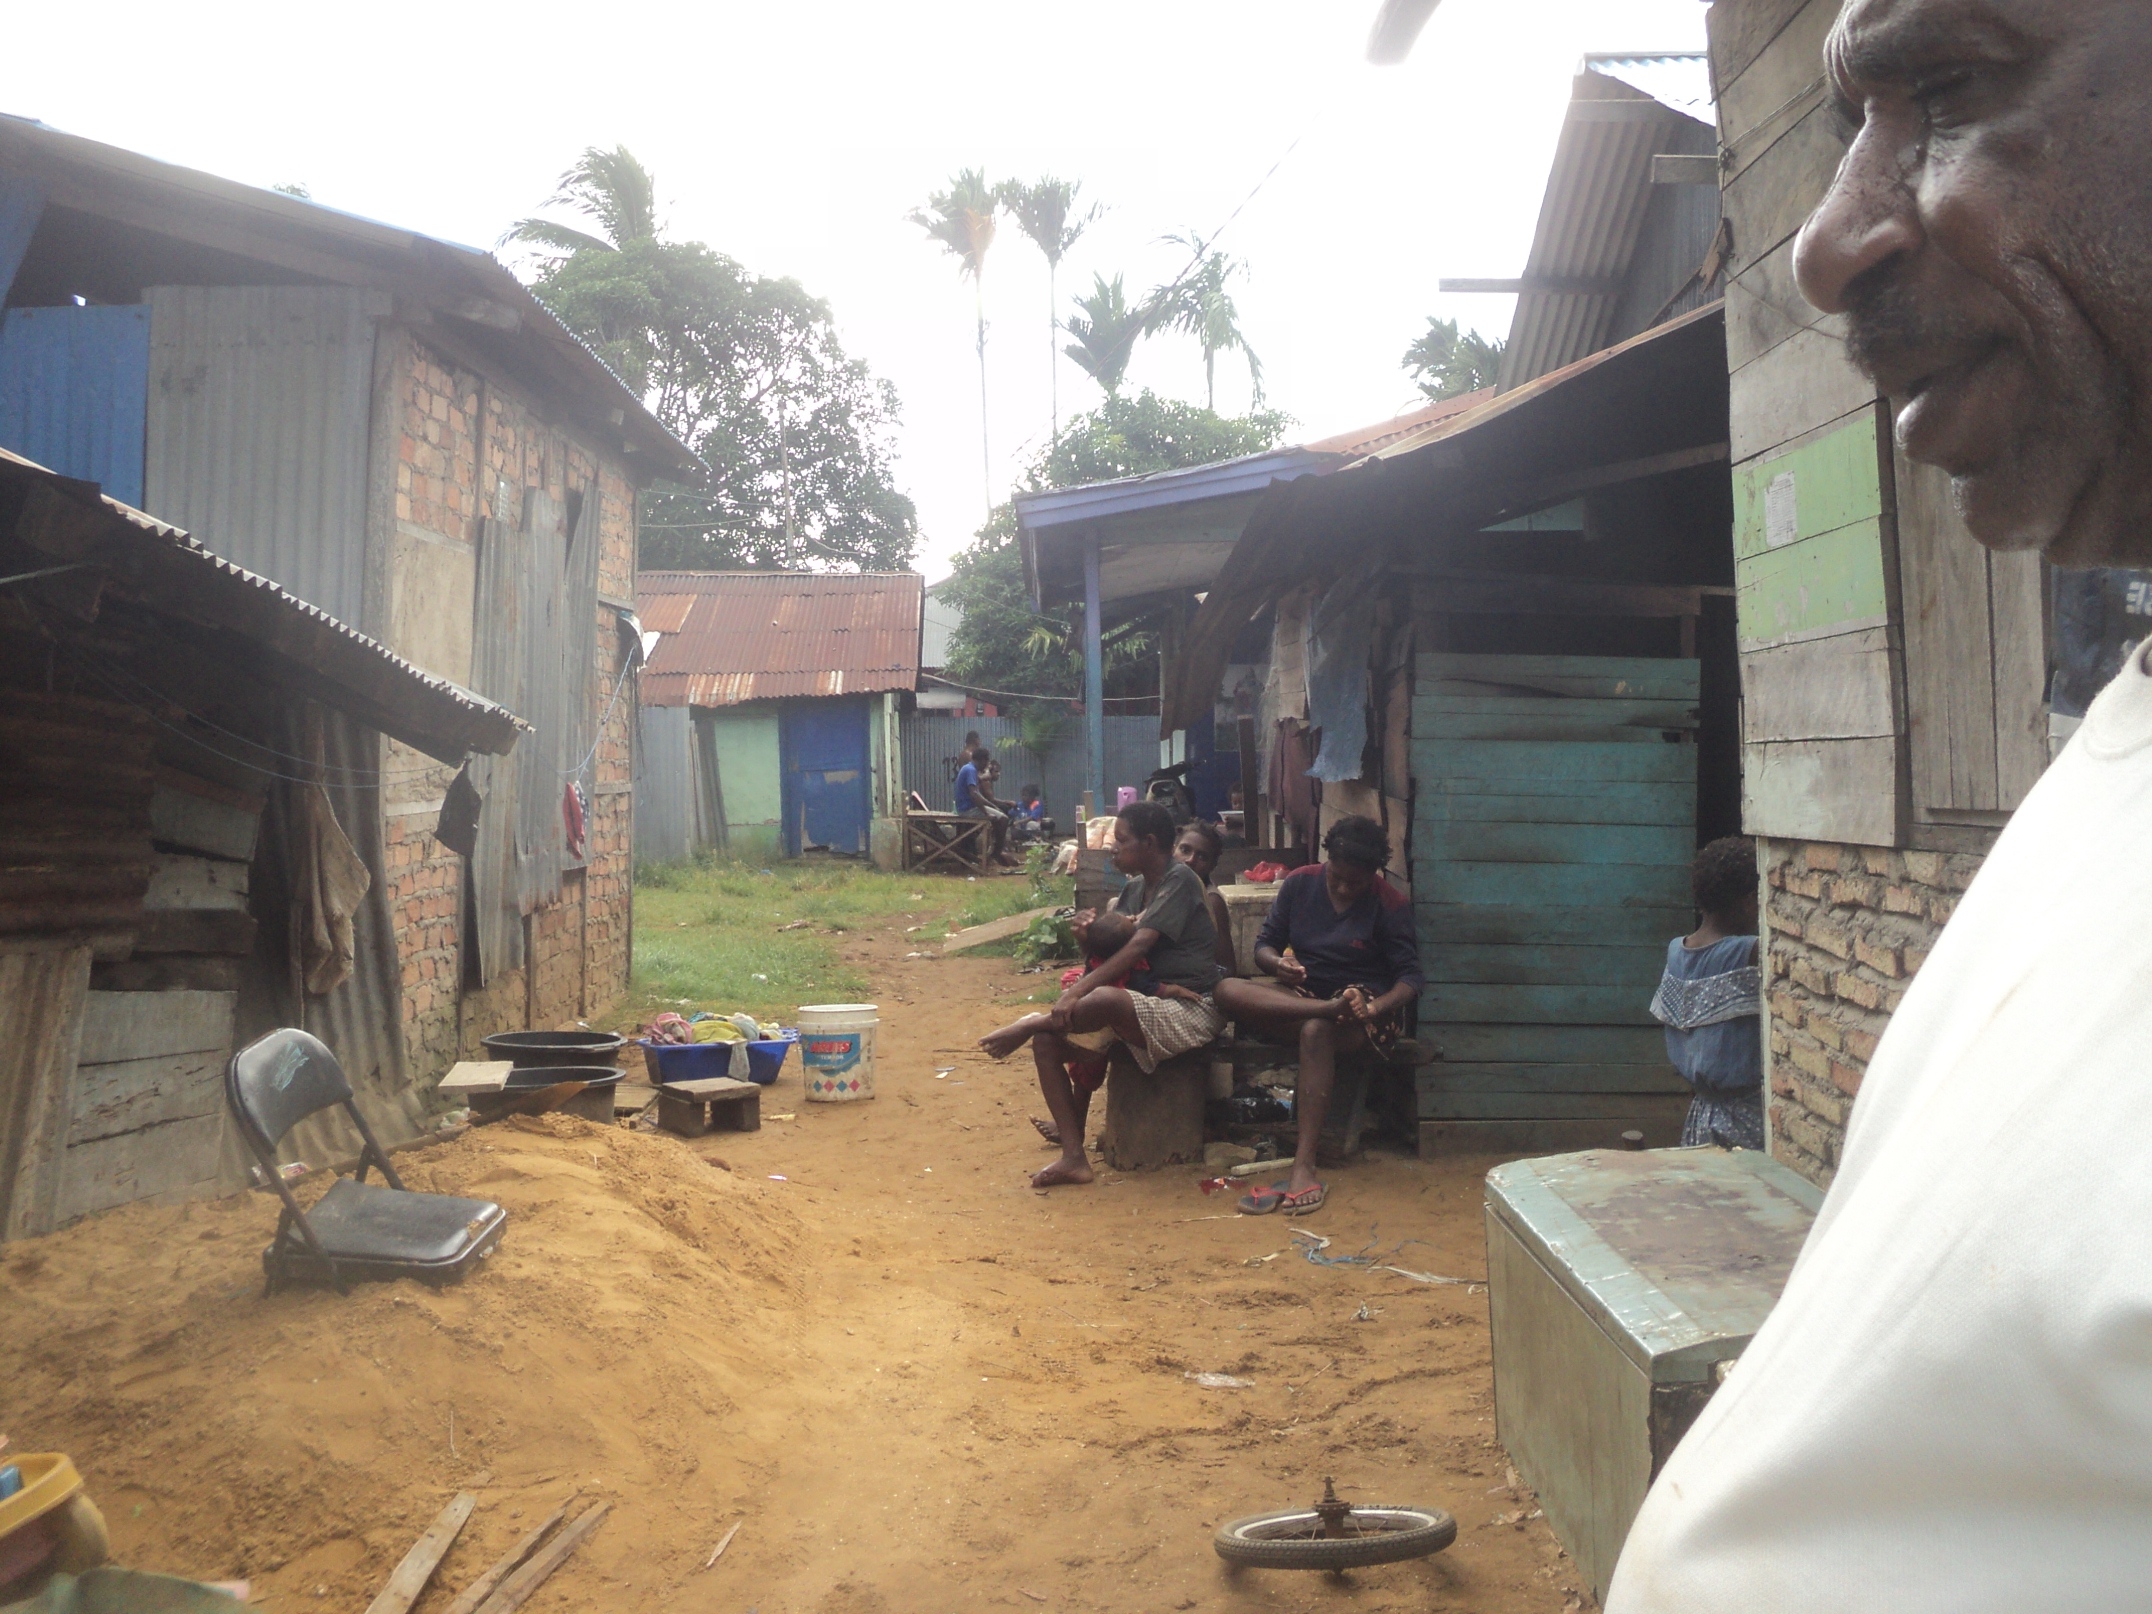 Rumah warga di Jalan Sesate dan Gak. Para perempuan pencari kepiting banyak tinggal di sini. Mereka berjuang menghidup keluarga dari menangkap dan berjualan kepiting. Foto: Agapitus Batbual. Mongabay Indonesia